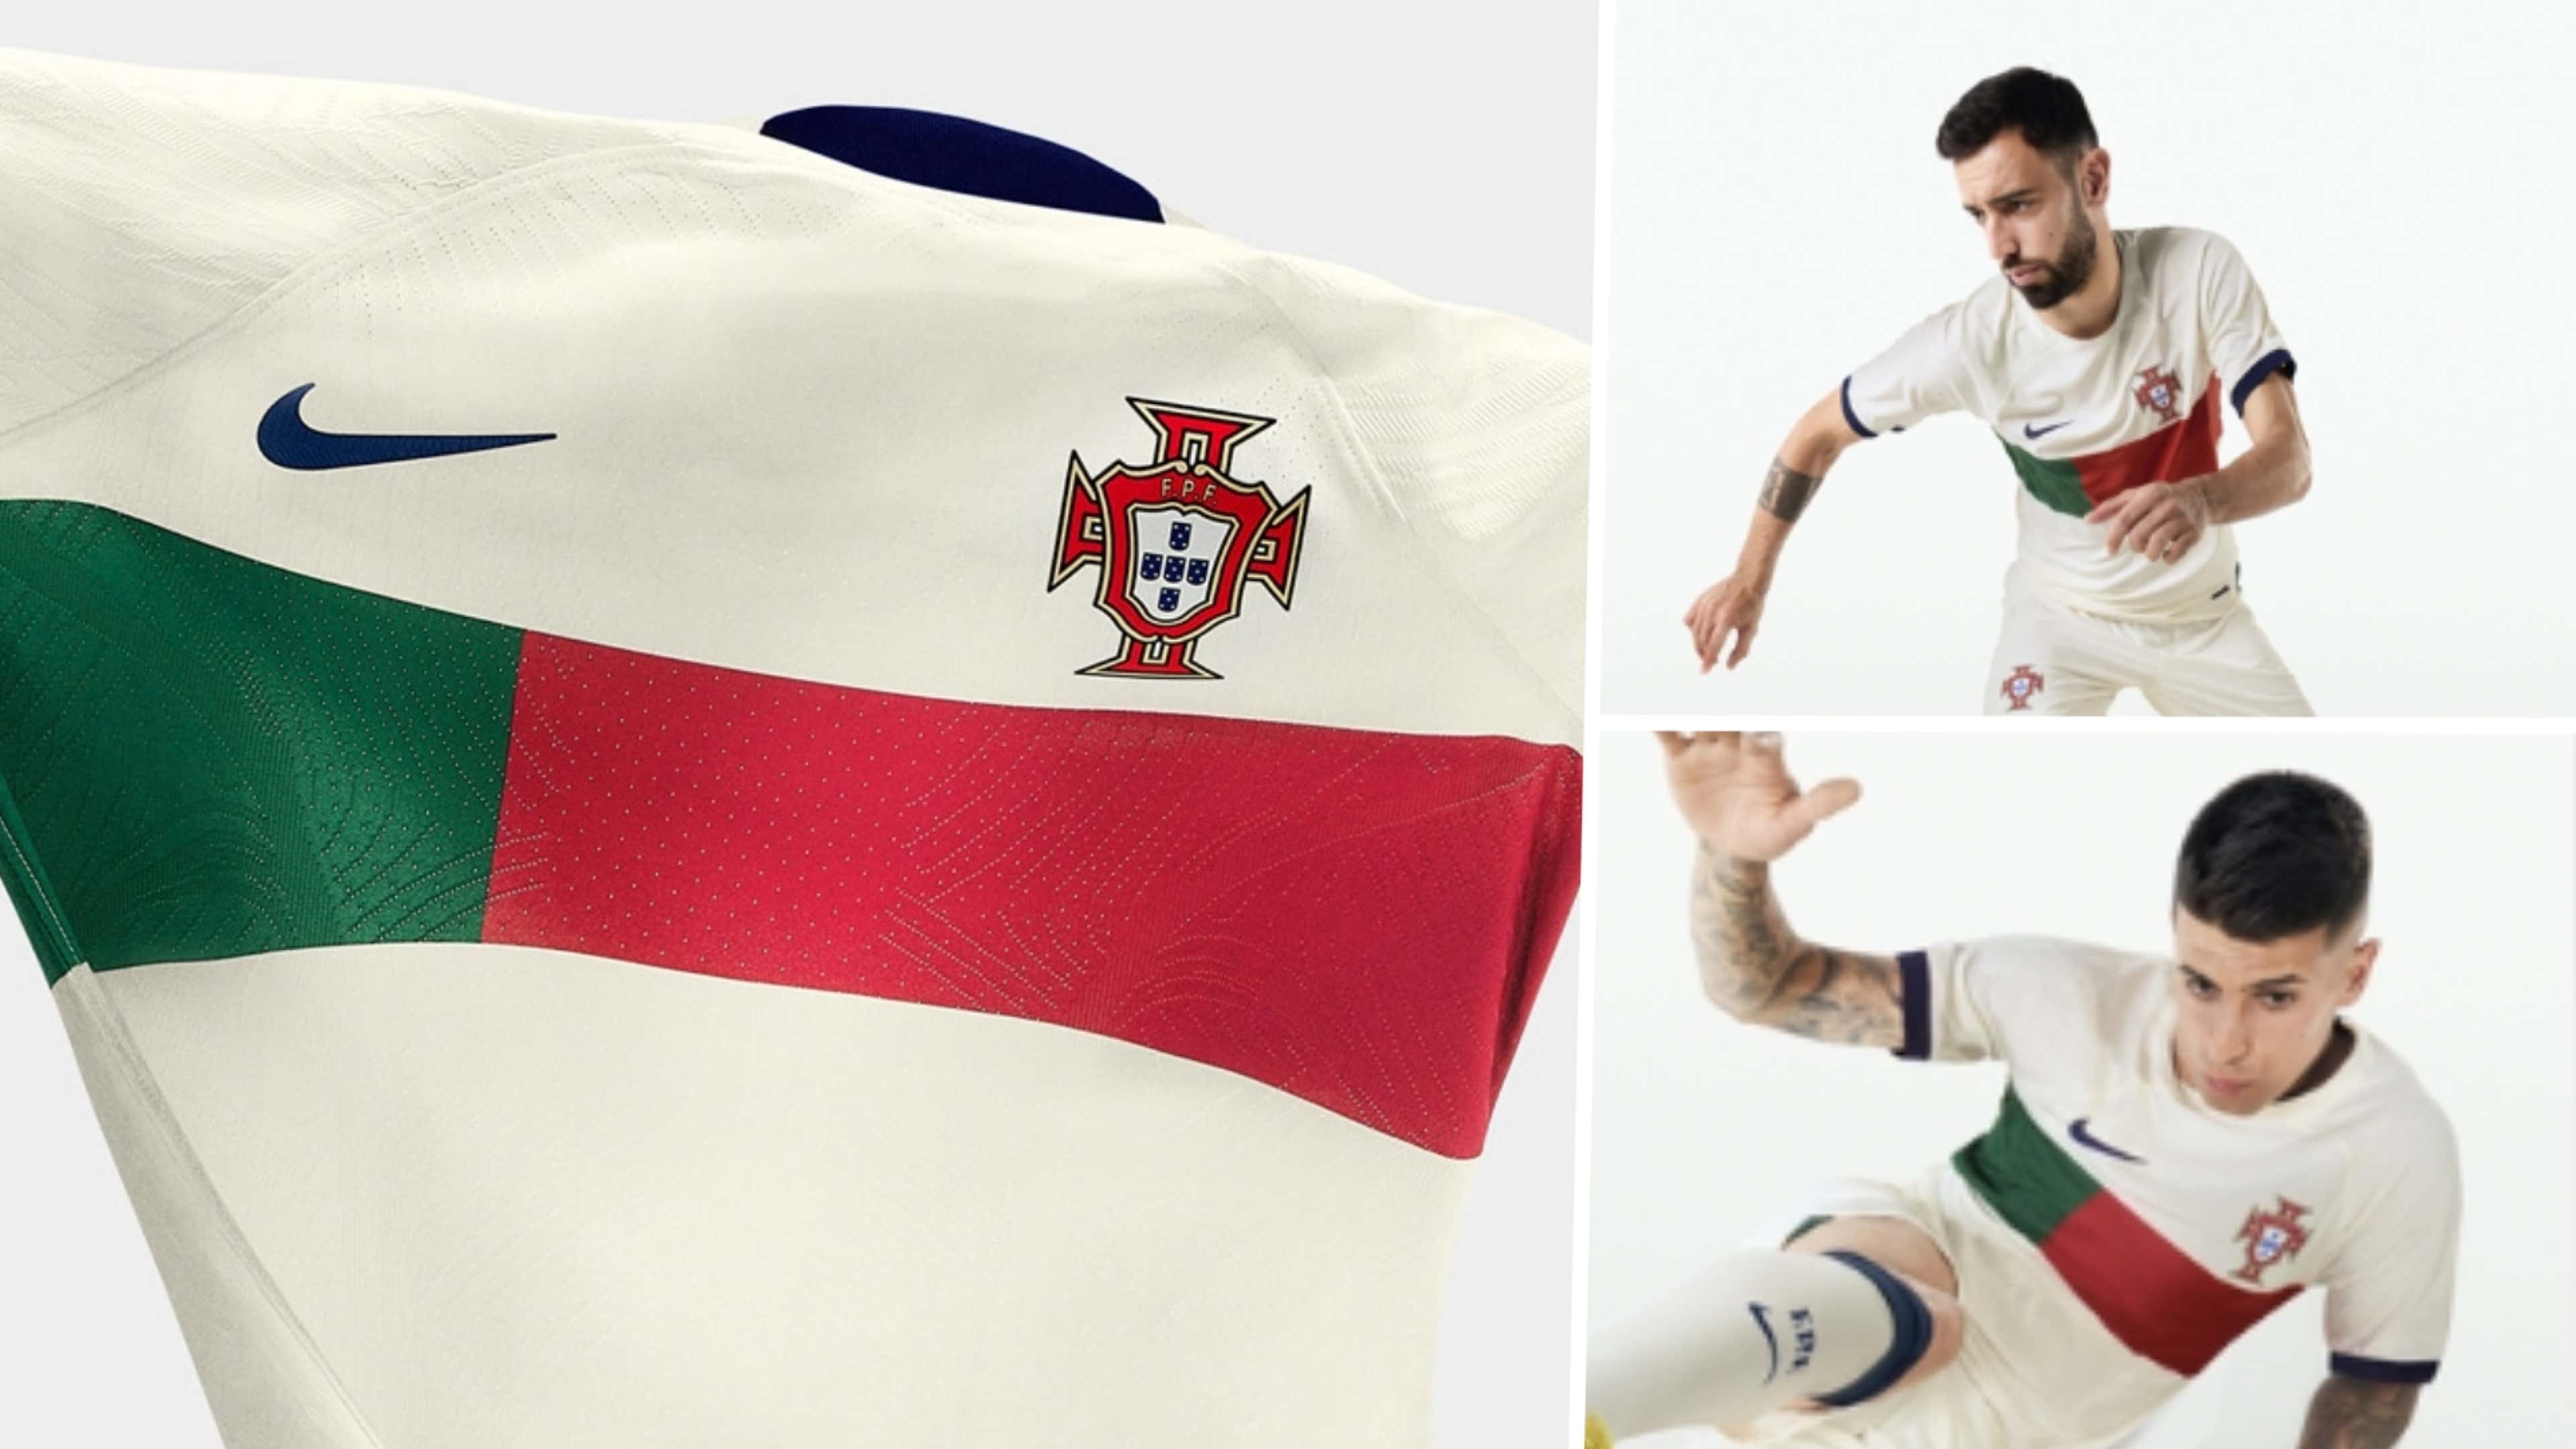 Seleção portuguesa divulga uniformes para a Copa do Mundo 2022